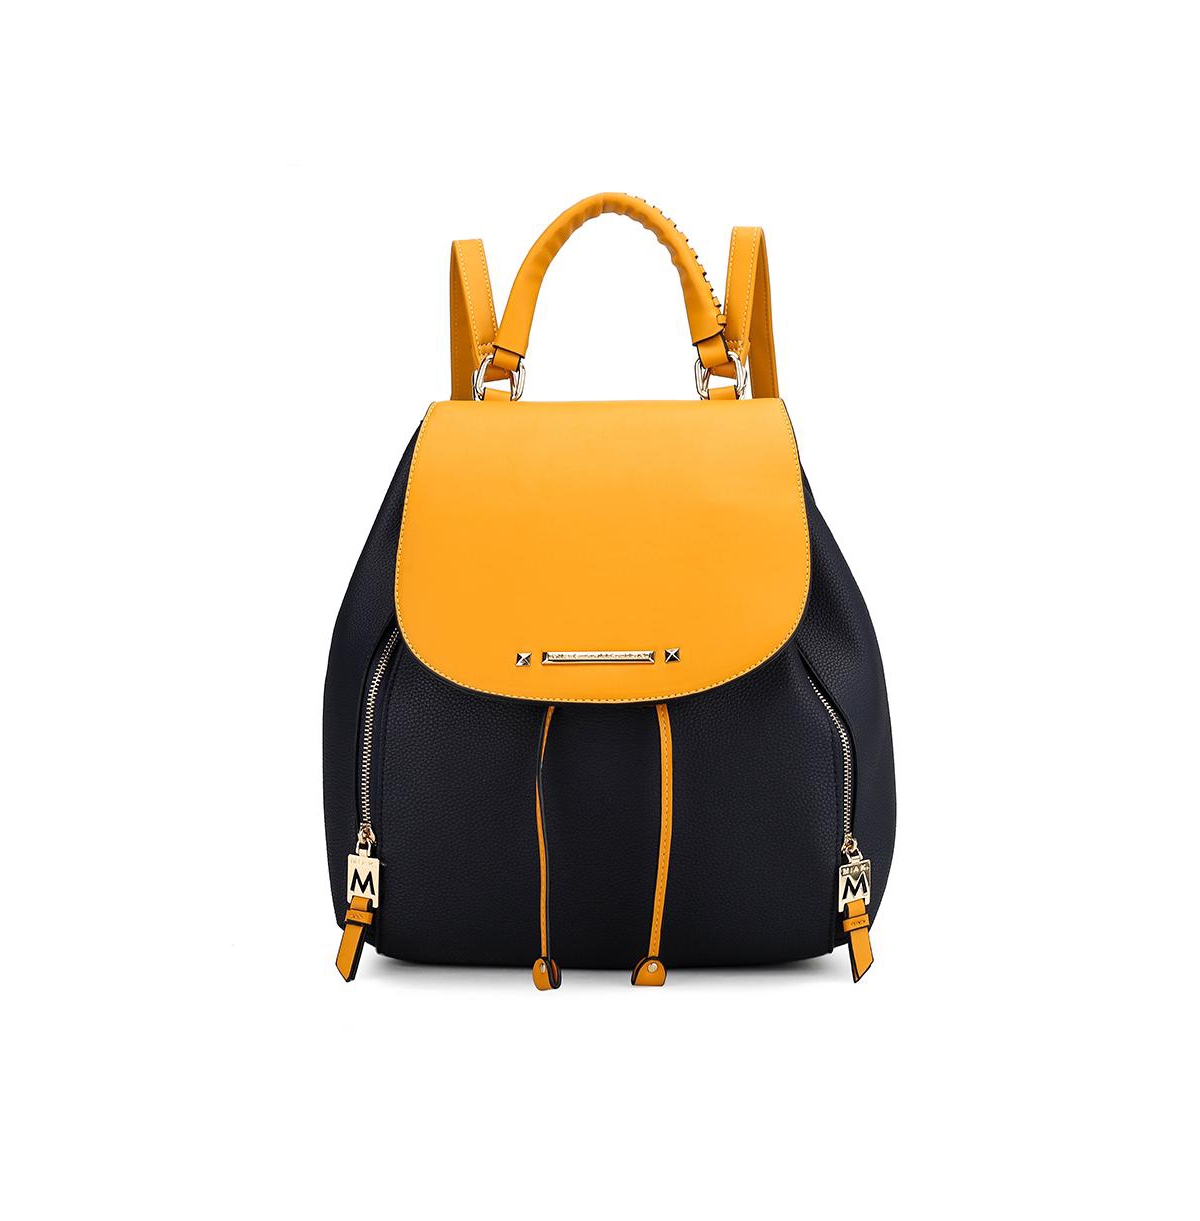 Kimberly Backpack by Mia K - Mustard